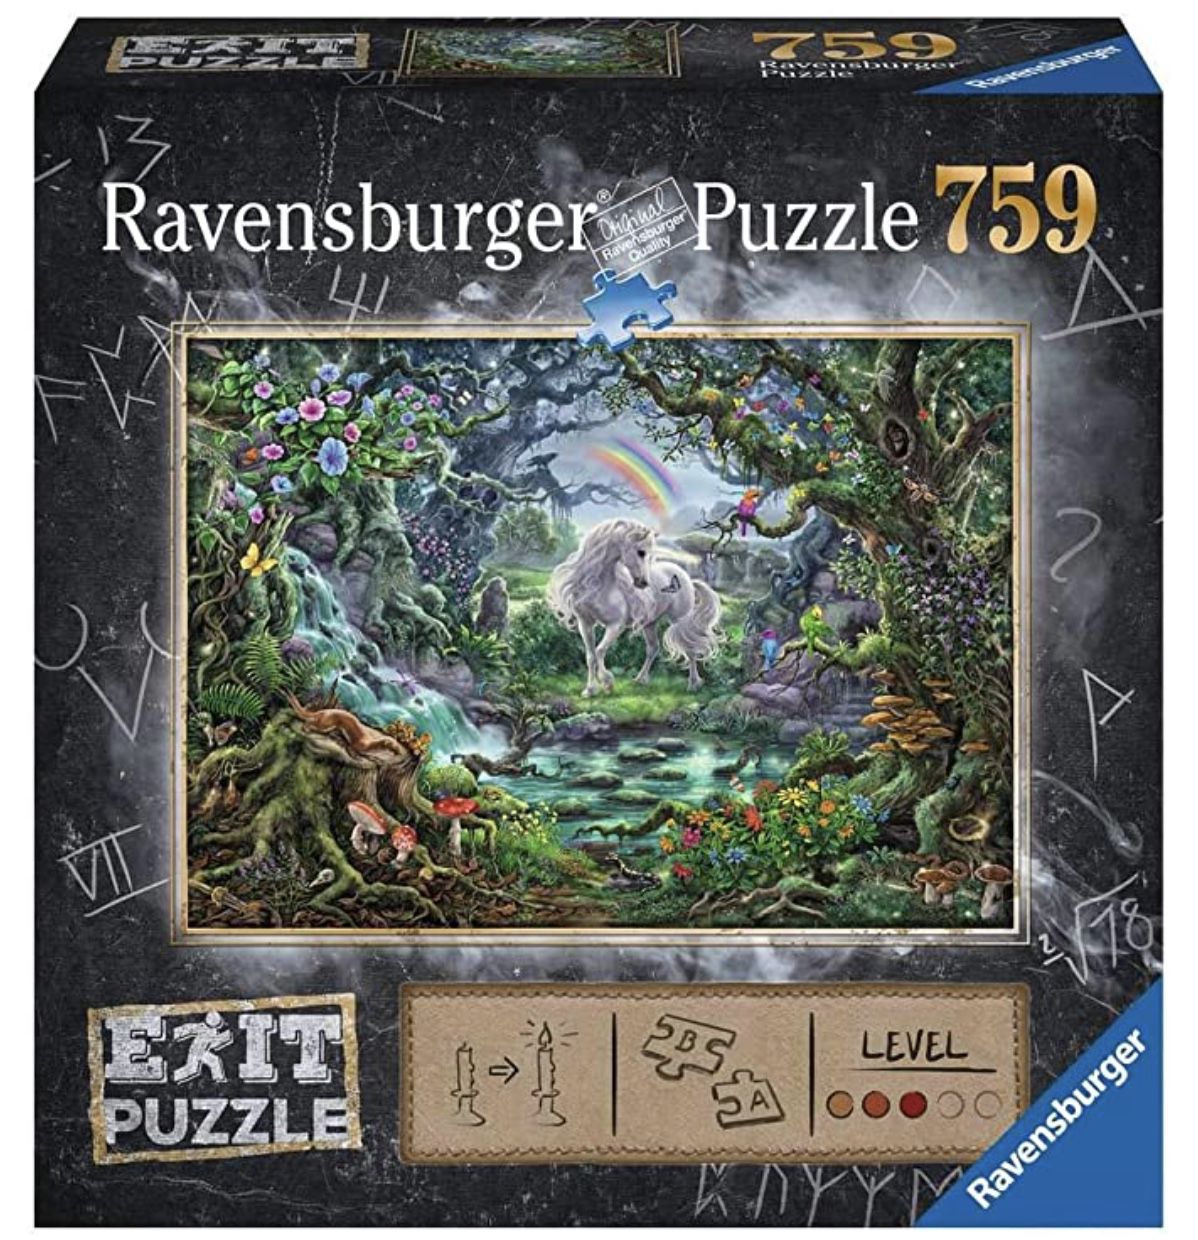 Ravensburger EXIT Puzzle 15030 Fantasy Einhorn mit 759 Teilen für 7,70€ (statt 15€)   Prime